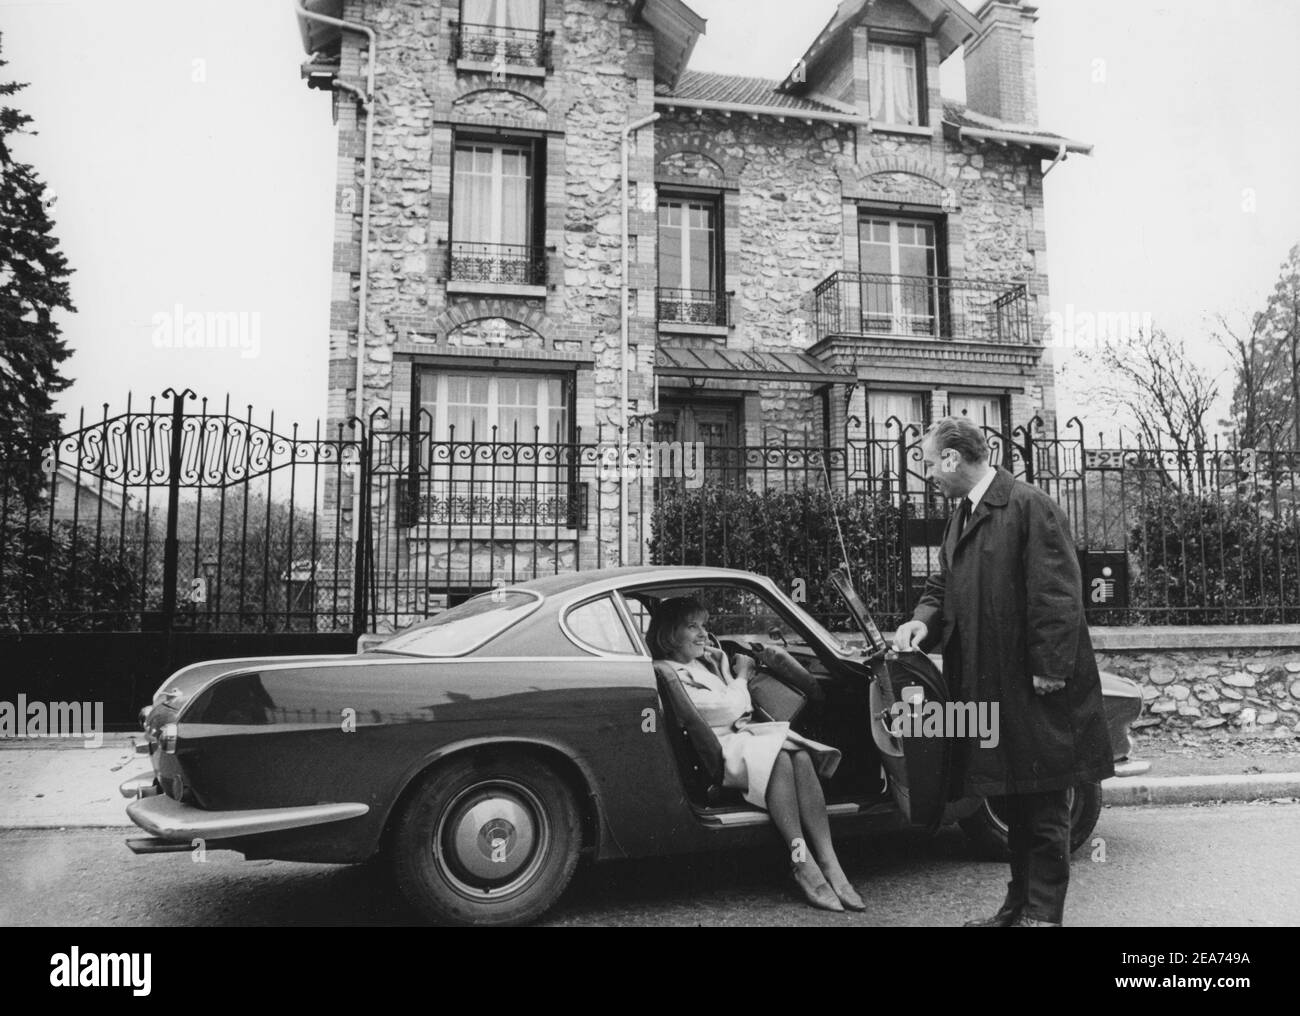 Volvo P1800. Une voiture de sport fabriquée par Volvo Cars a commencé en 1961 et se termine en 1973. Le style a été conçu par la designer suédoise Pelle Pettersson. La voiture a été présentée au salon de l'automobile de Genève en 1961. Le P1800 est devenu largement connu lorsqu'il est conduit par l'acteur futur de James Bond Roger Moore comme Simon Templier dans la série télévisée The Saint. Photo ici l'actrice suédoise Gunnel Lindblom avec son mari à l'extérieur de leur villa en France avec leur Volvo P1800. 1965 Banque D'Images